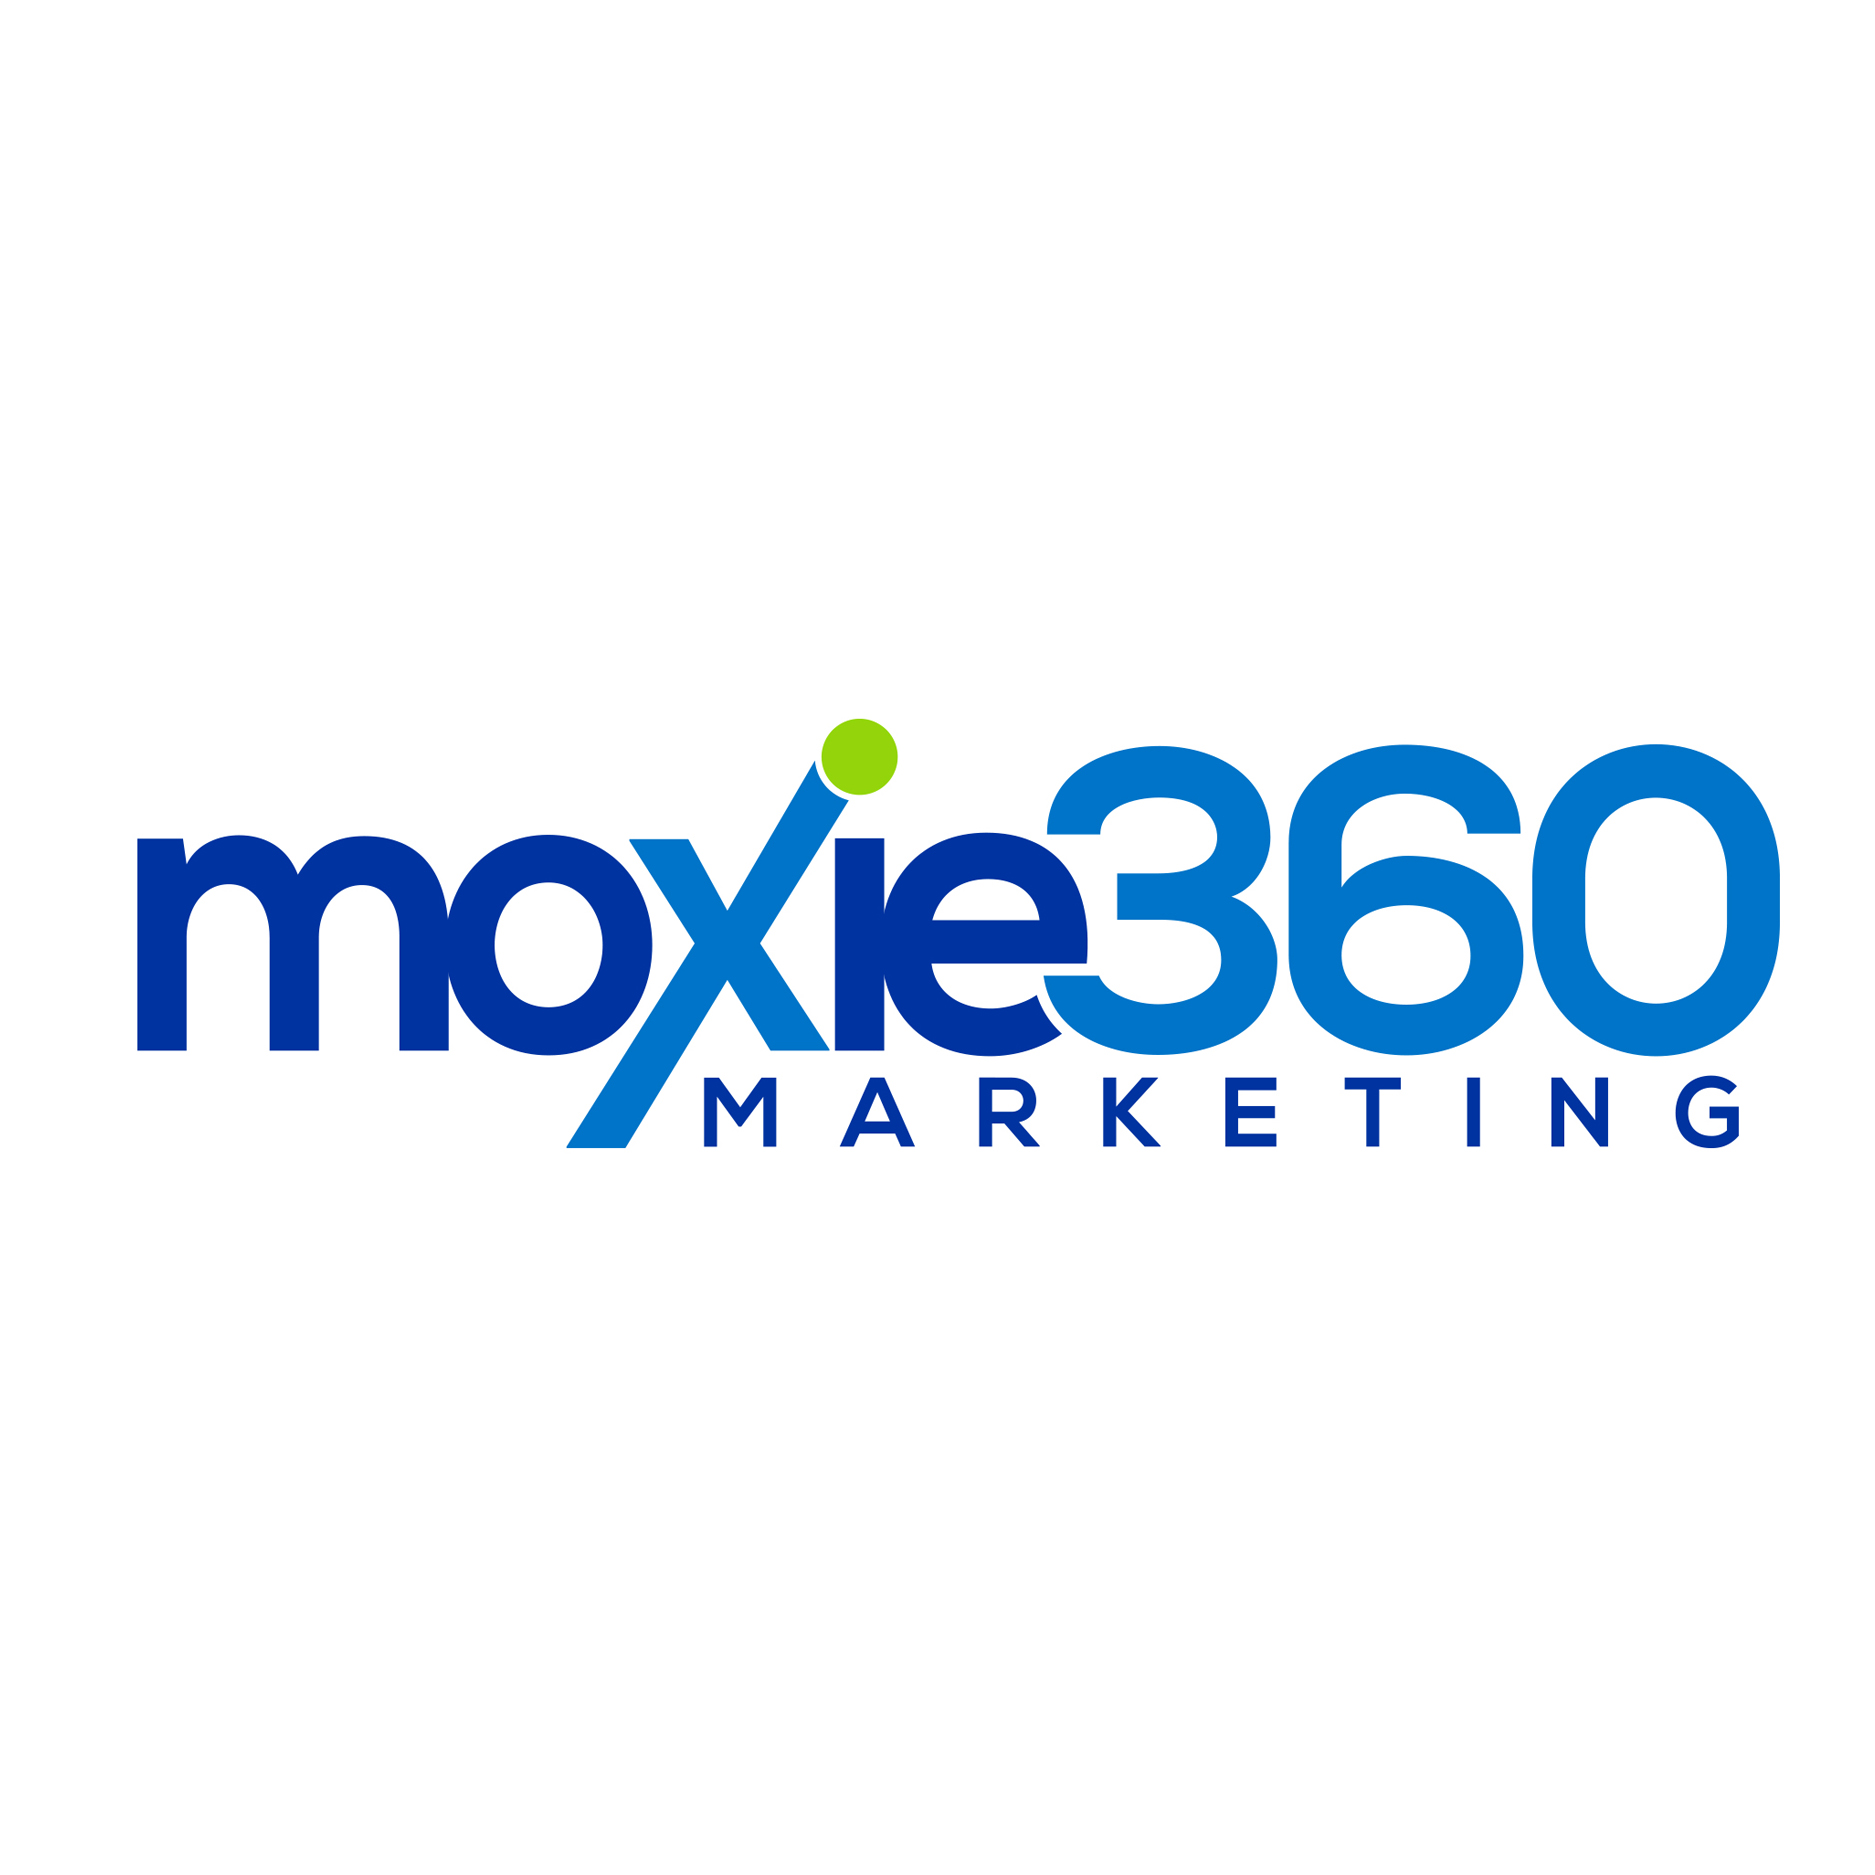 Moxie360 Marketing